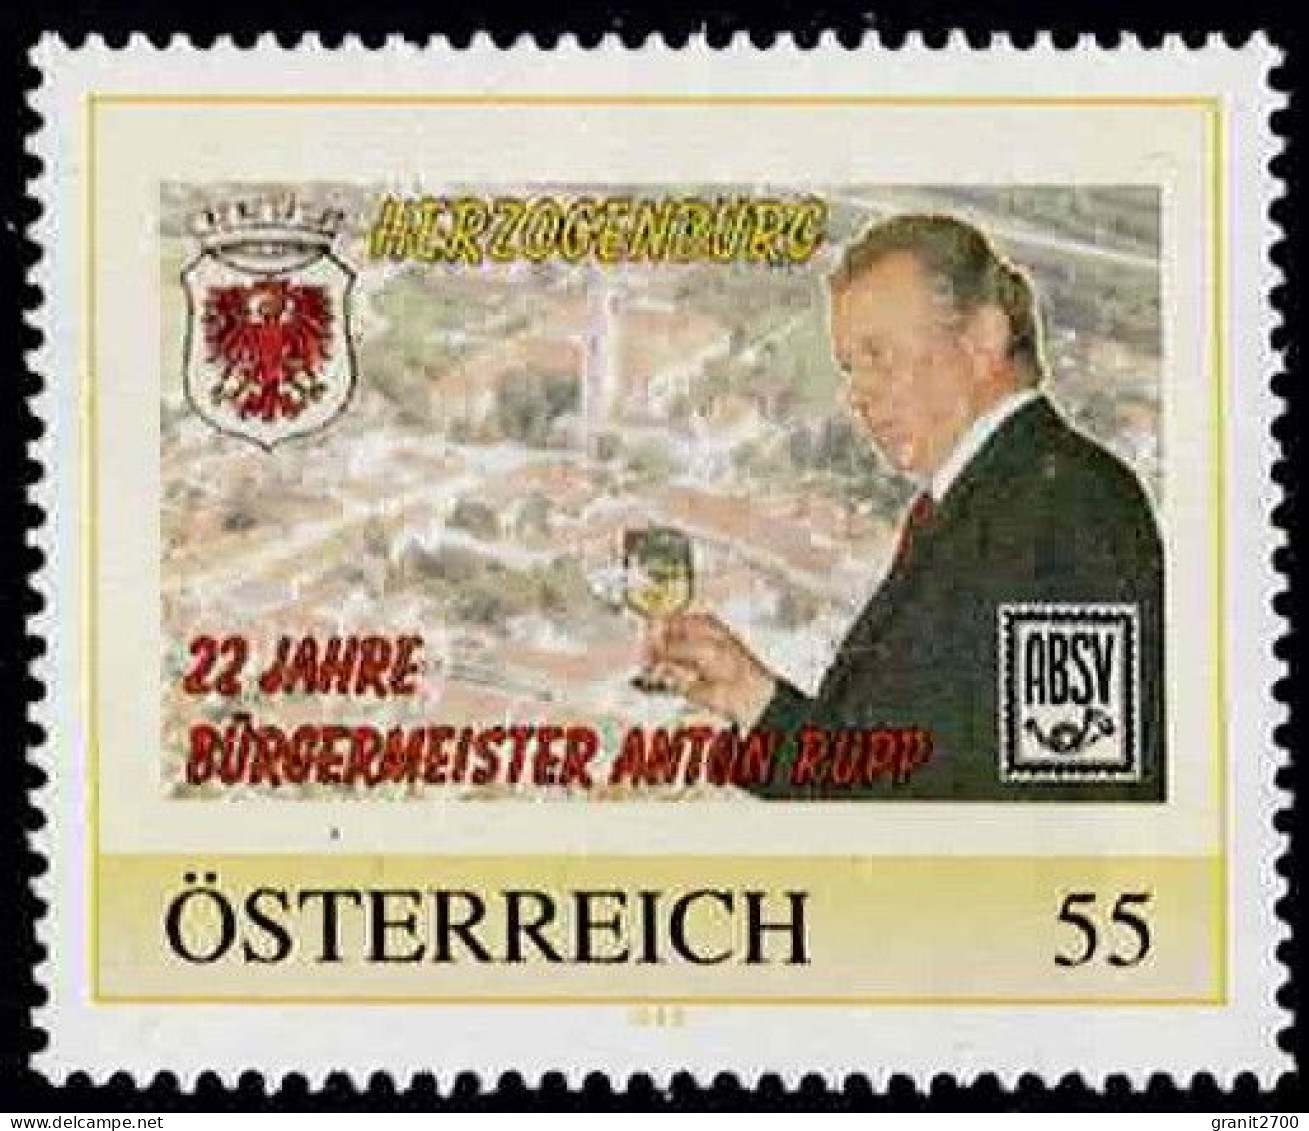 PM  Herzogenburg - 22 Jahre Bürgermeister Ex Bogen Nr. 8015225  Postfrisch - Personalisierte Briefmarken